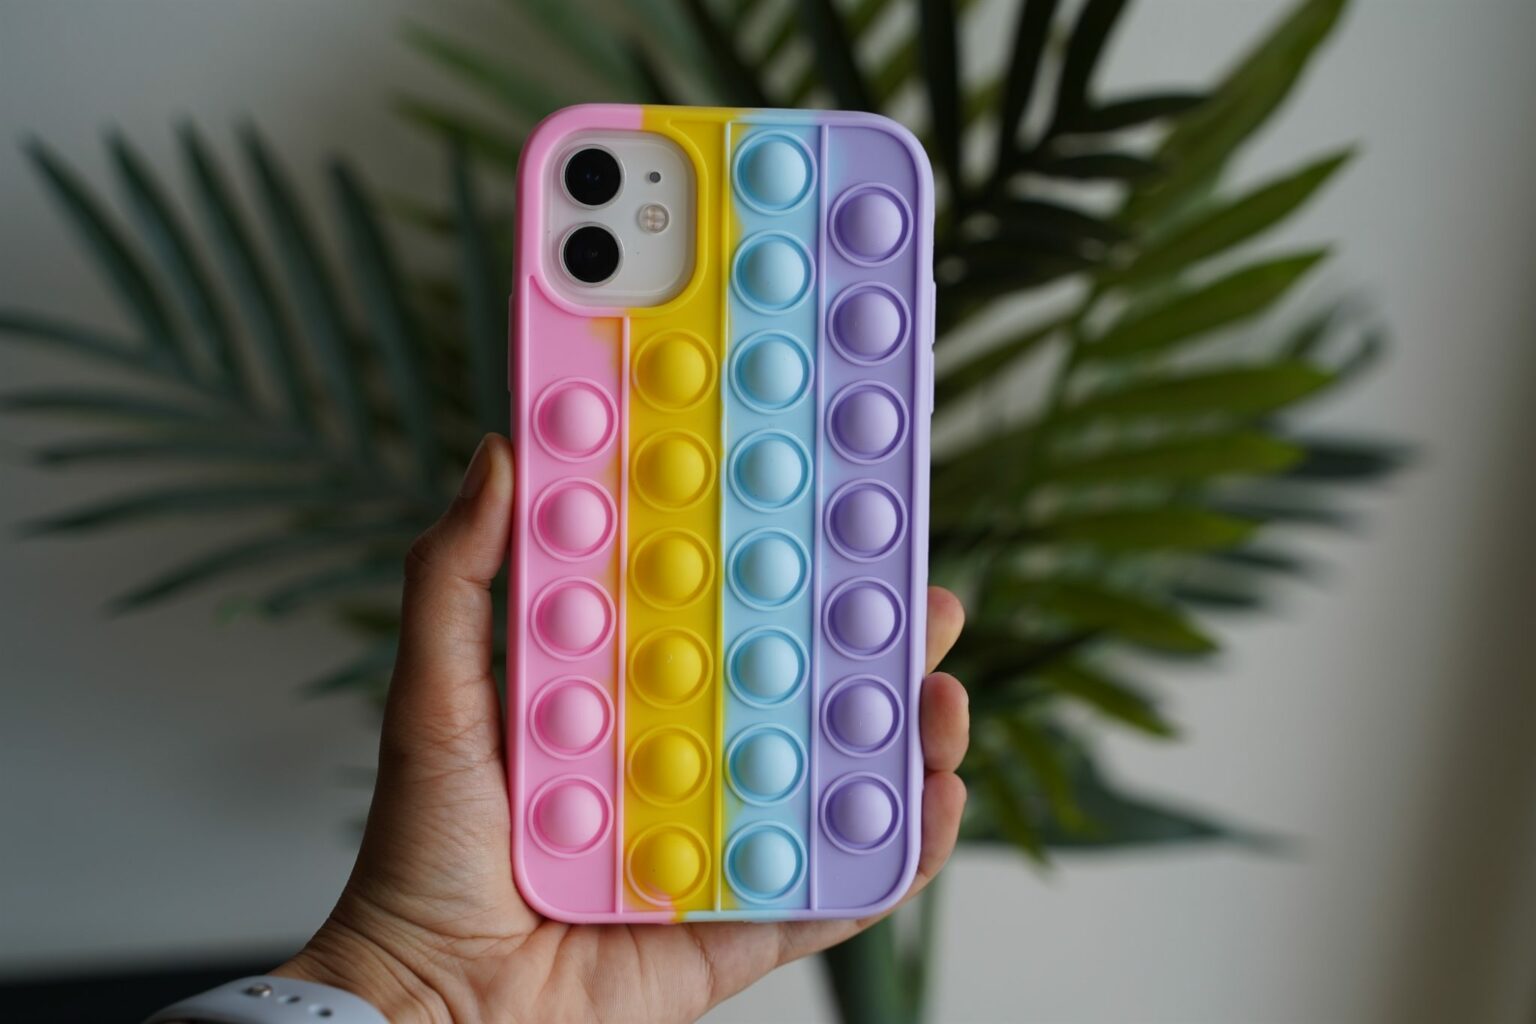 bubble pop phone case